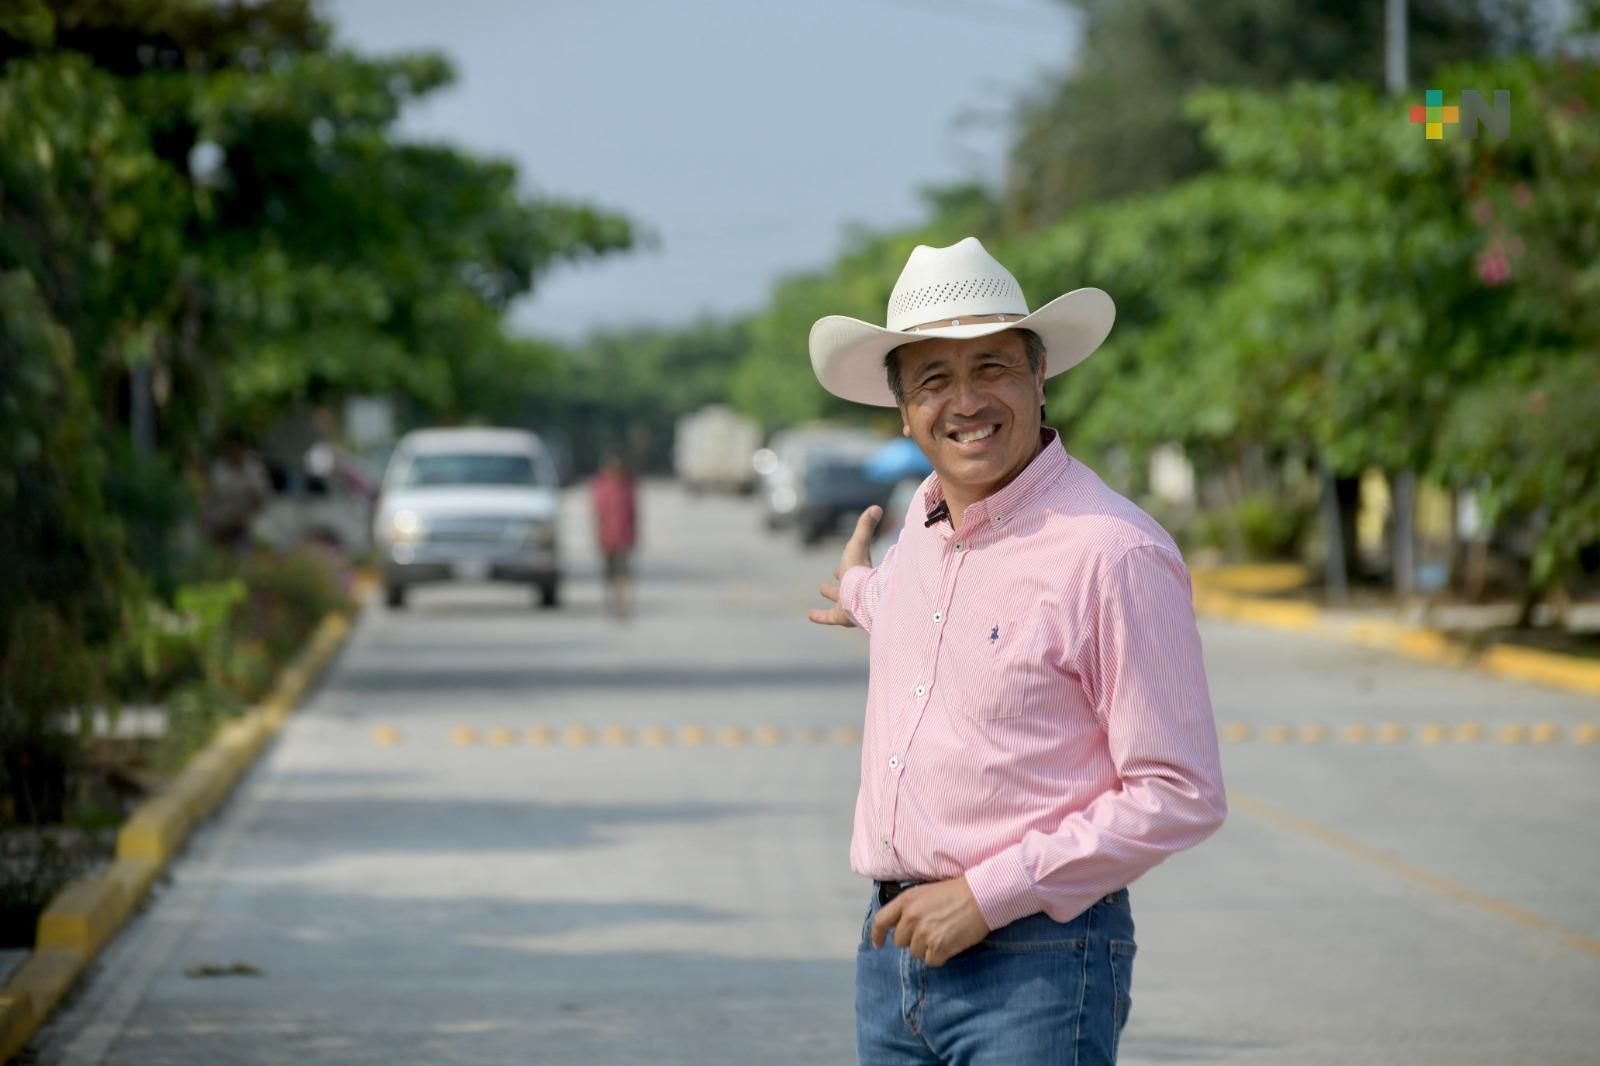 La transformación llegó a la zona rural de Veracruz: Cuitláhuac García